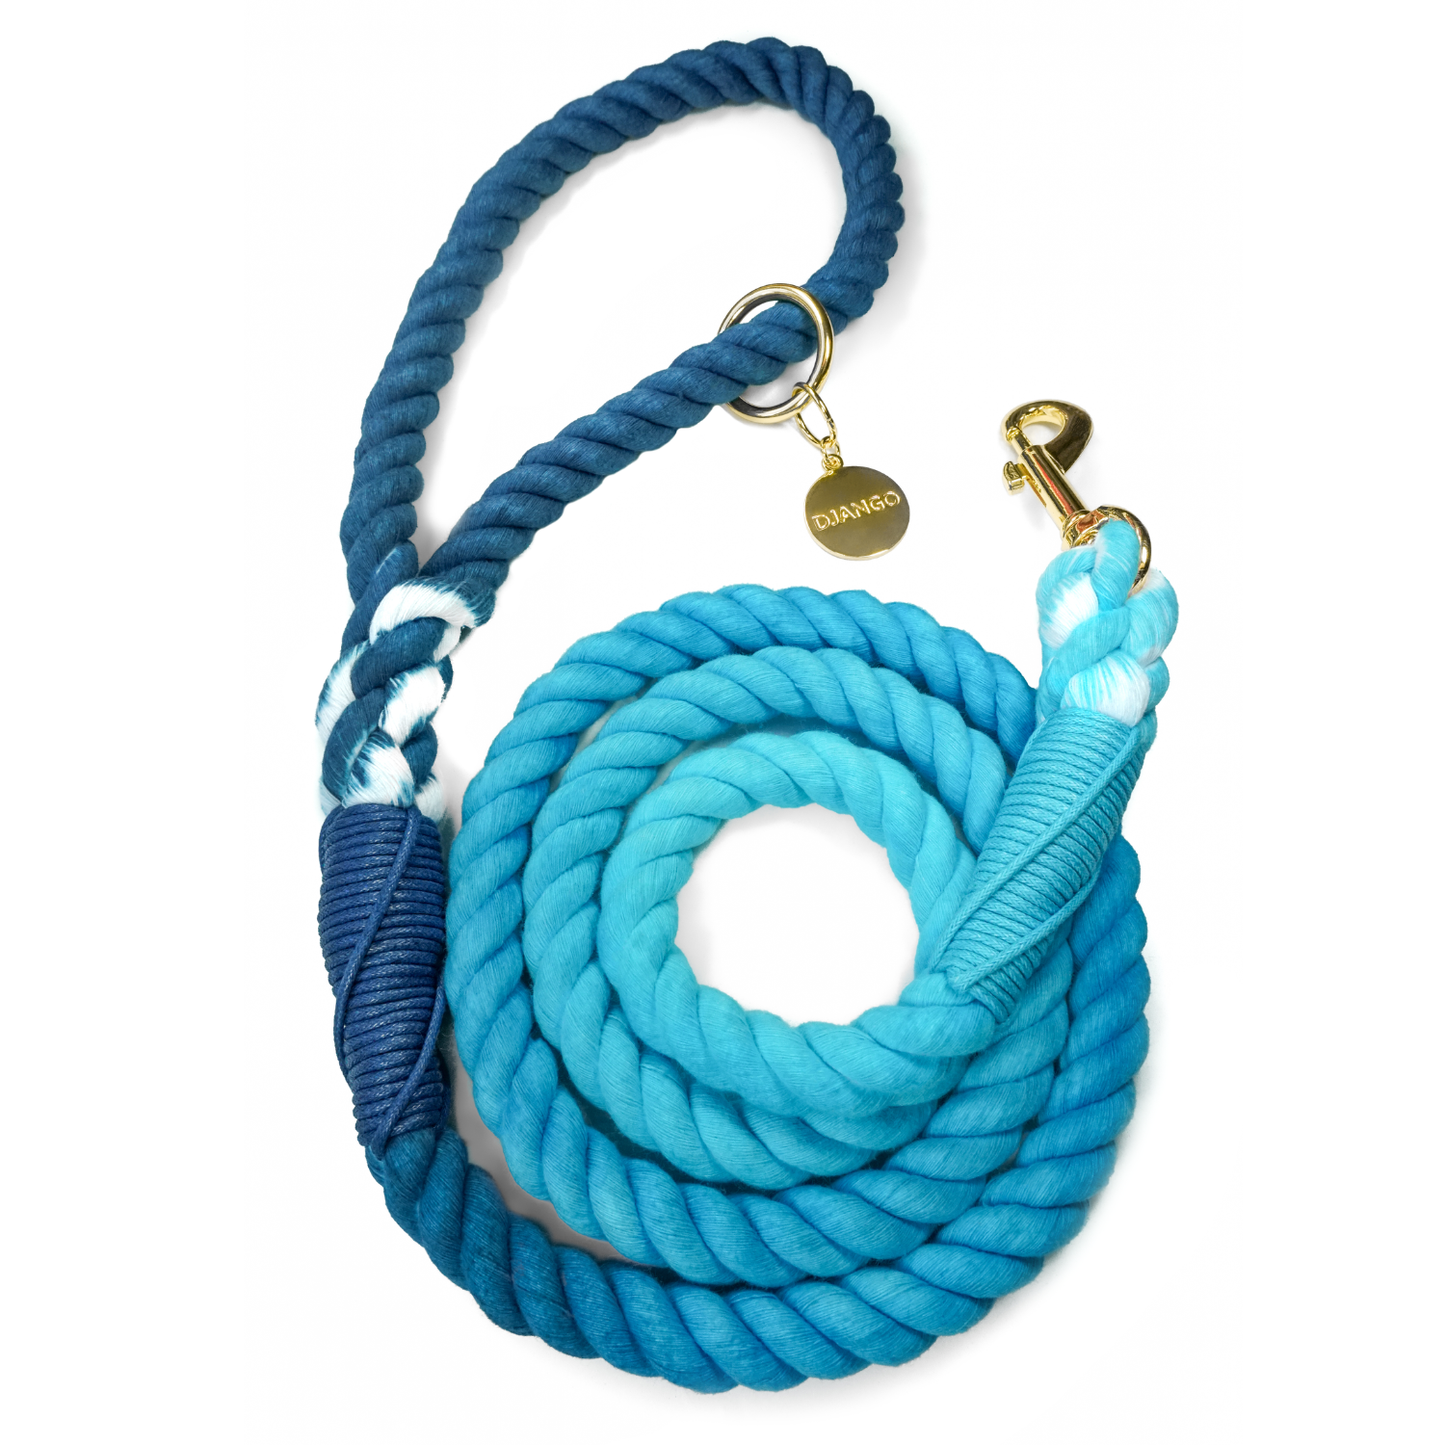 DJANGO - Cotton Rope Dog Leash - Pacific Blue Ombré  Image